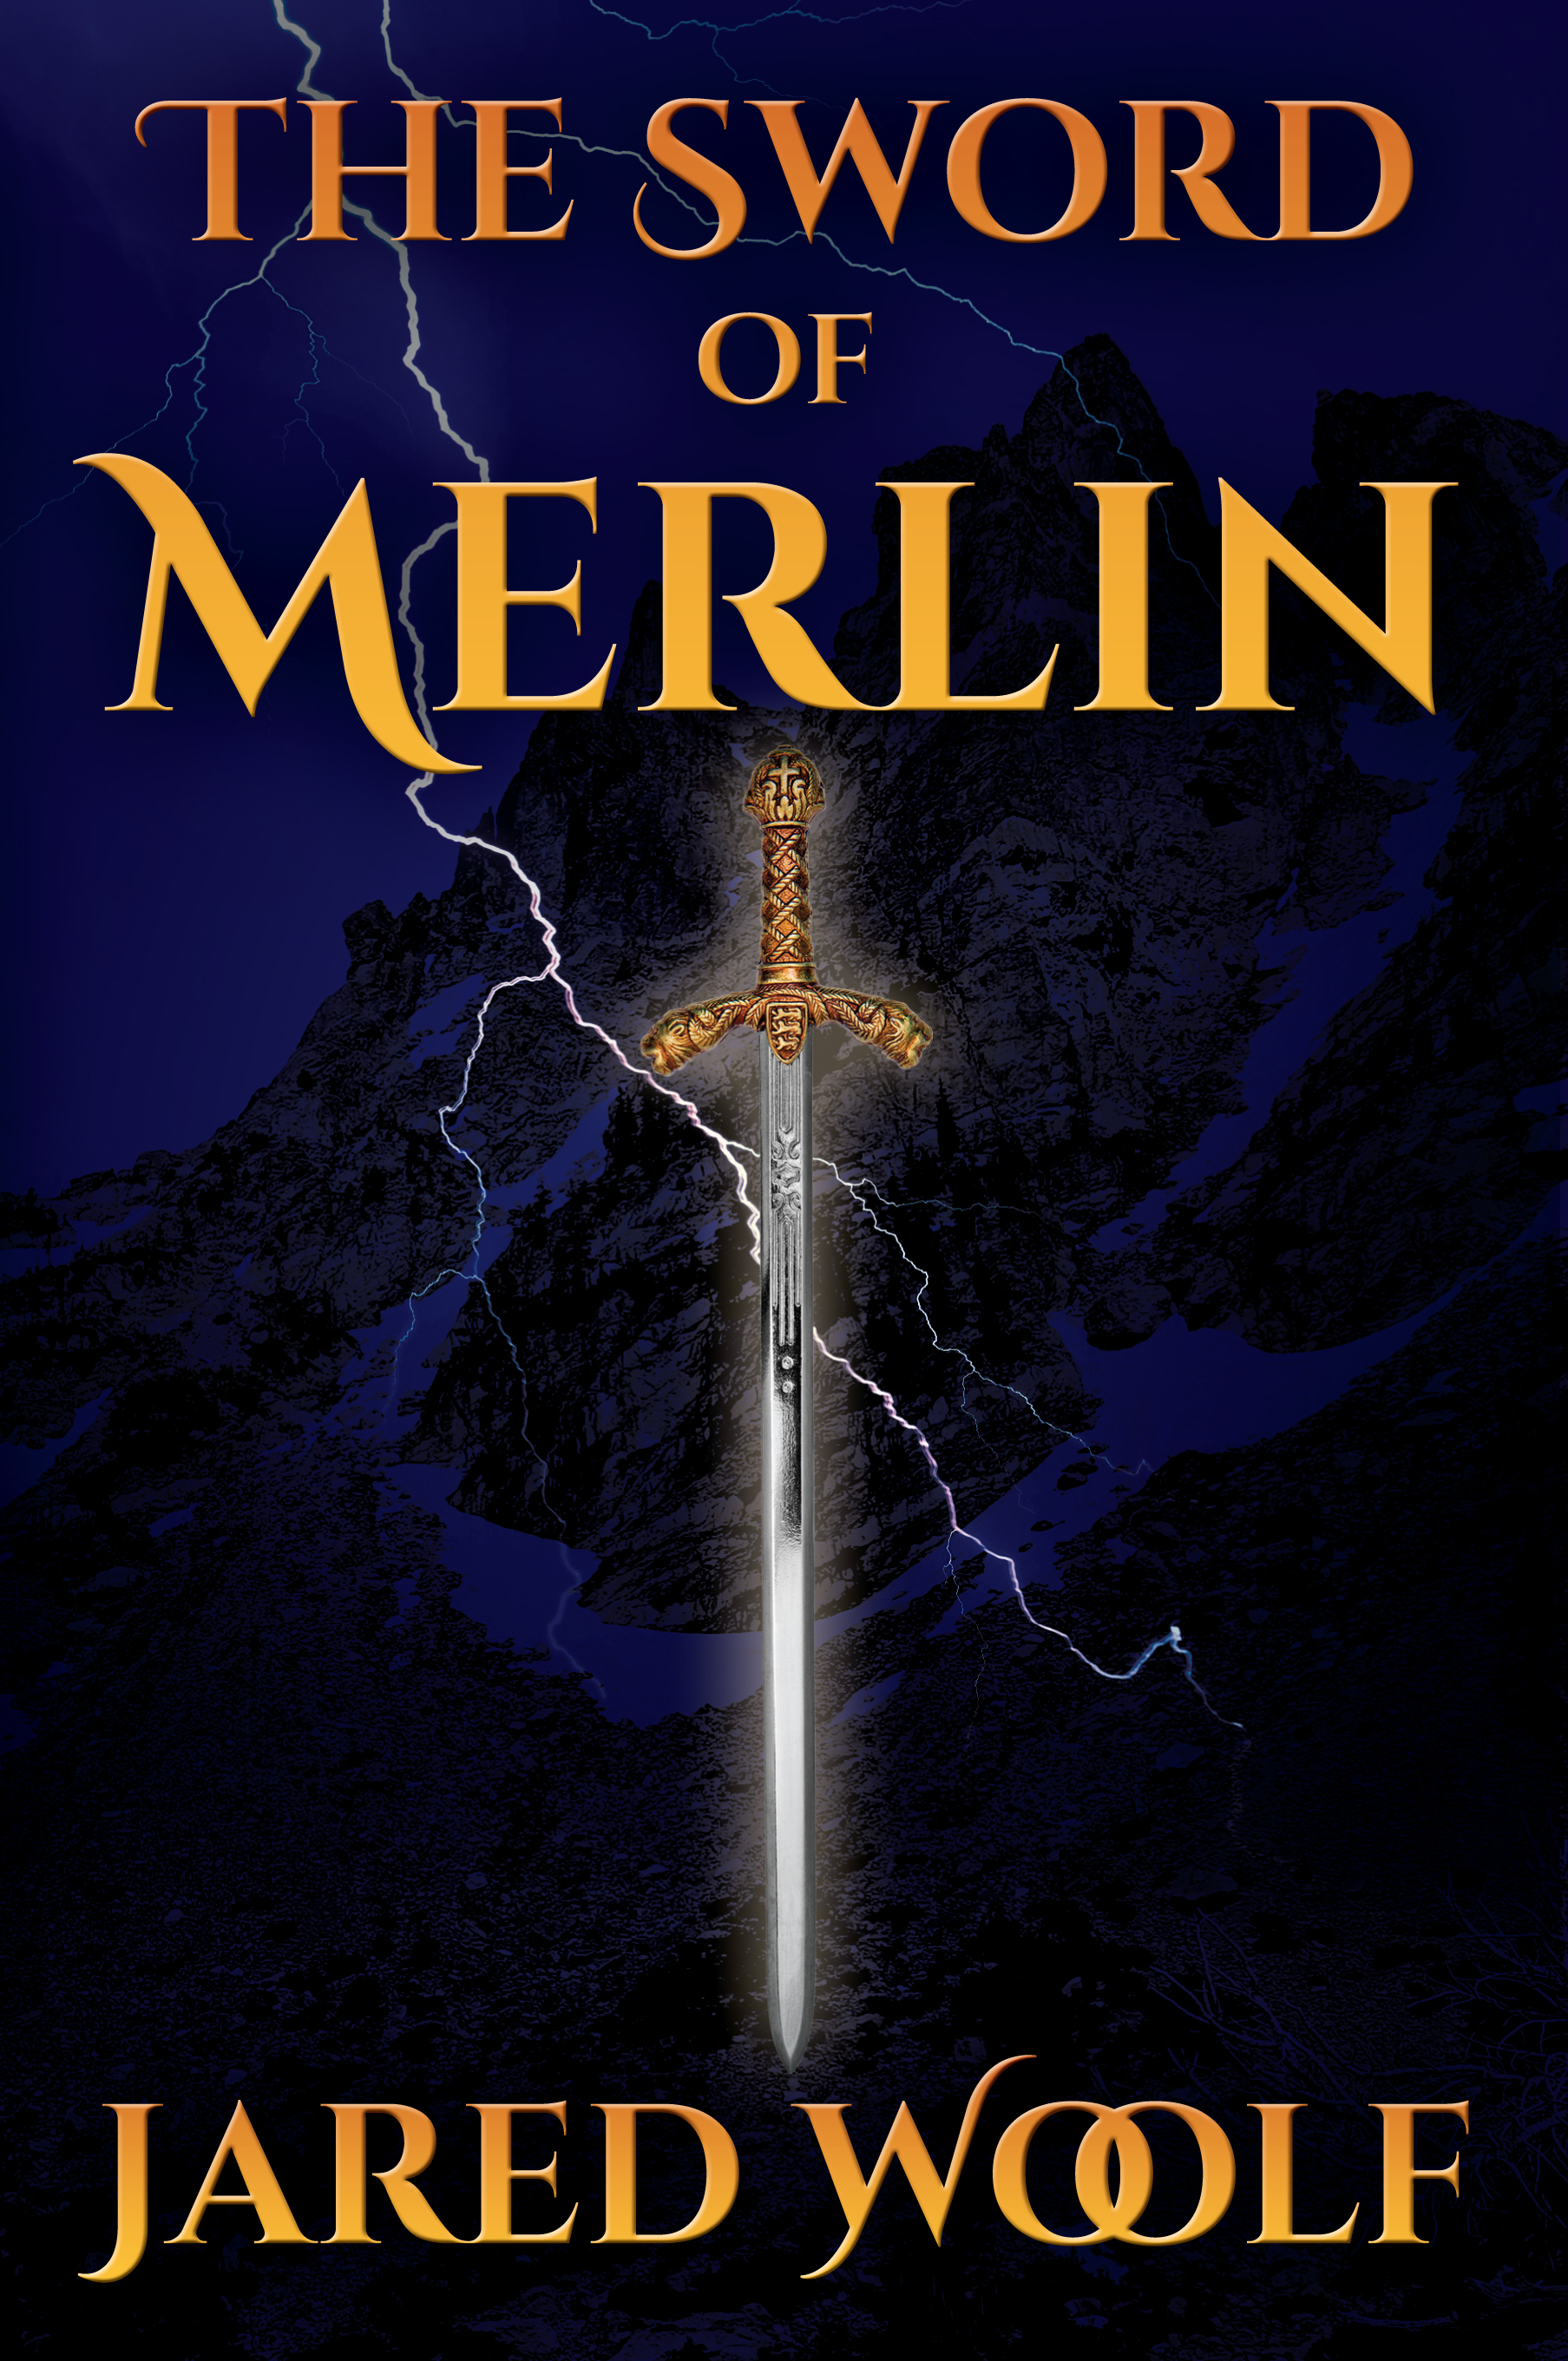 The Sword of Merlin